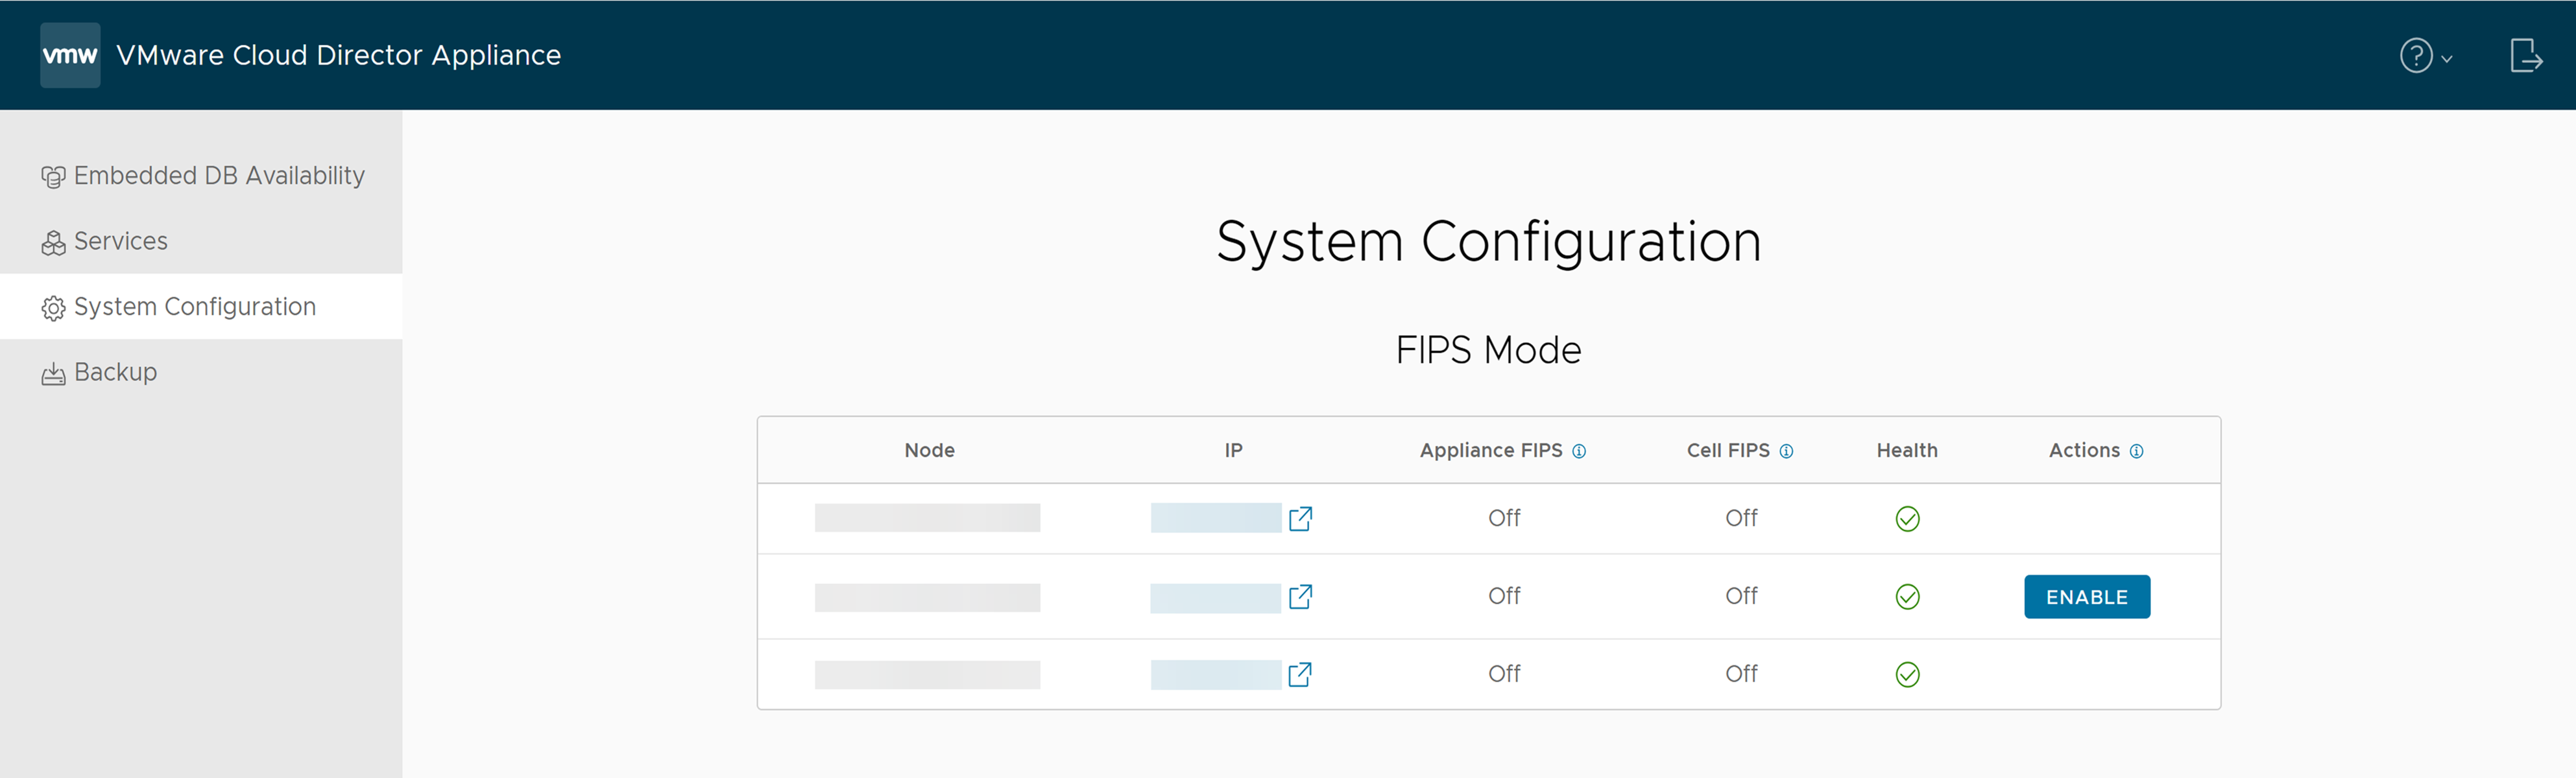 在 VMware Cloud Director 應用裝置管理使用者介面的 [系統組態] 索引標籤上，可以找到 FIPS 模式資訊。